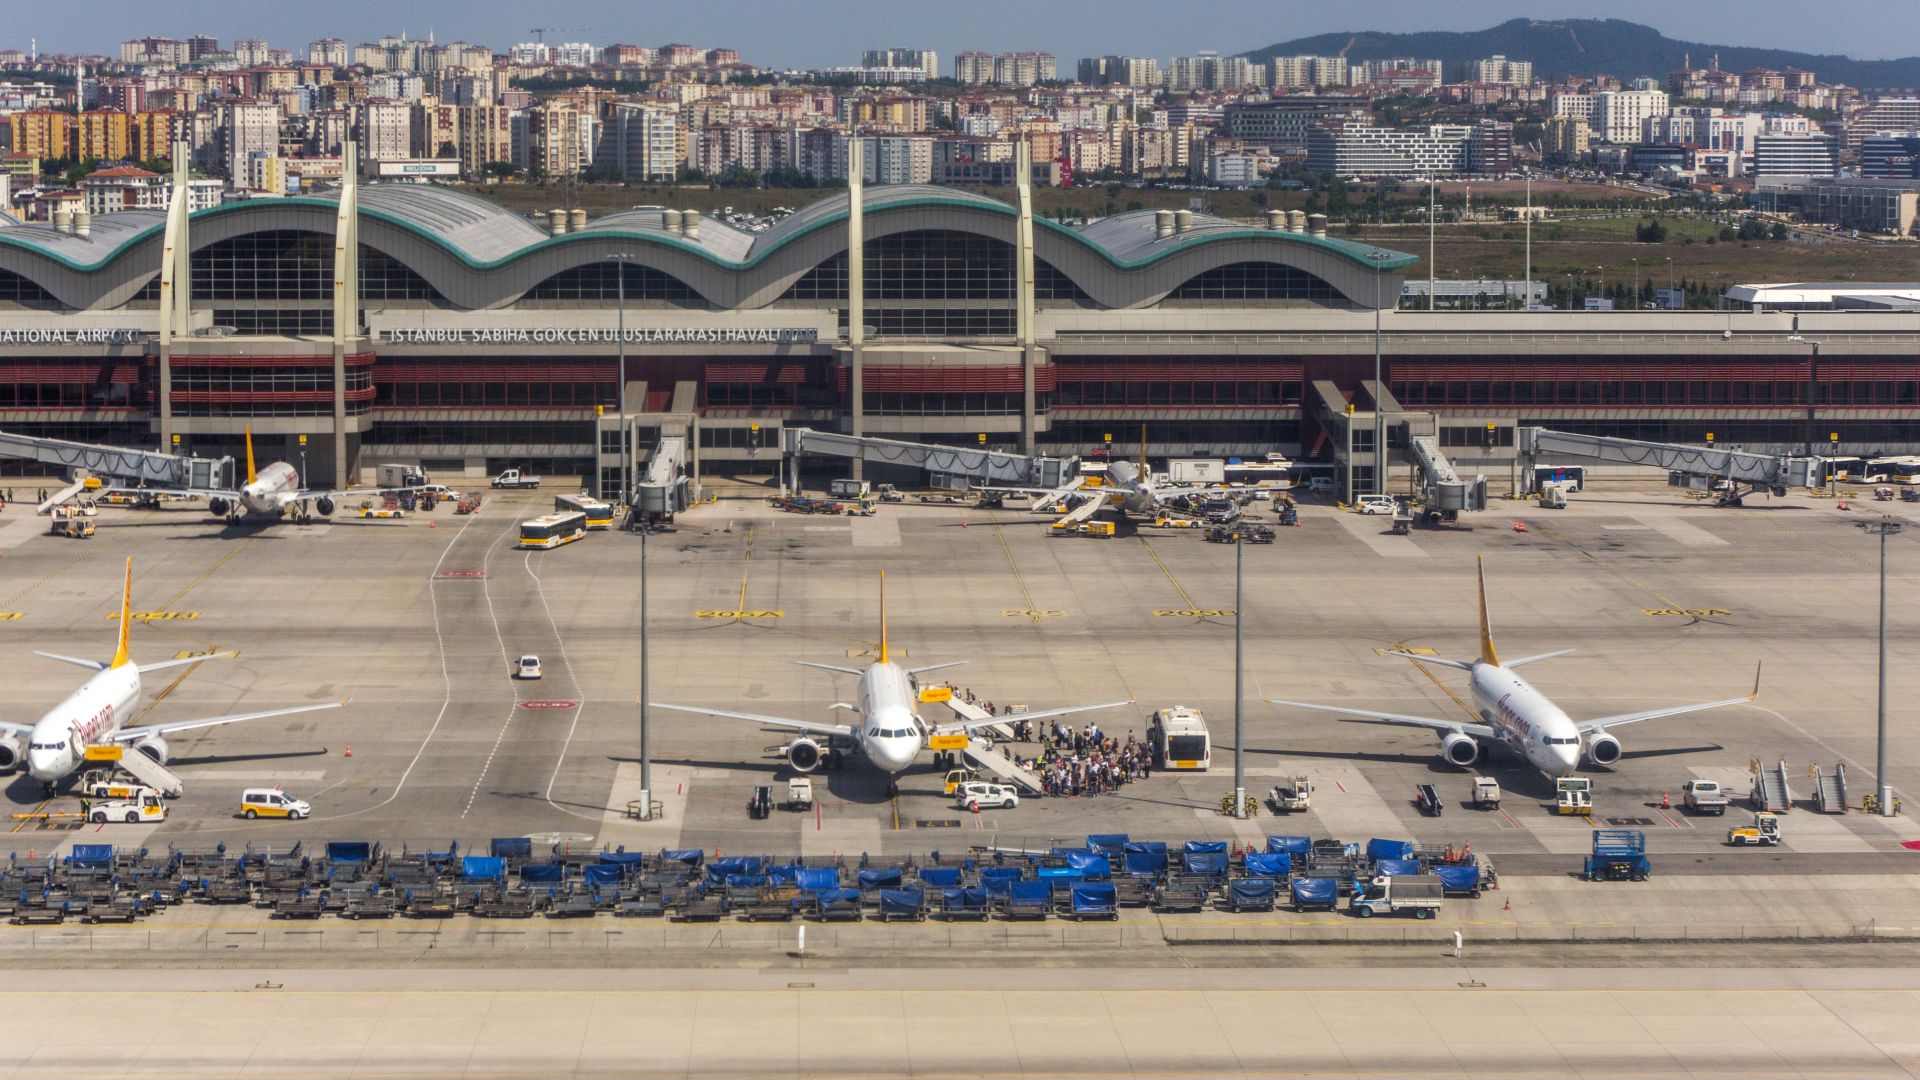 Фалшива заплаха предизвика паника в самолет, изпълняващ полет от Истанбул